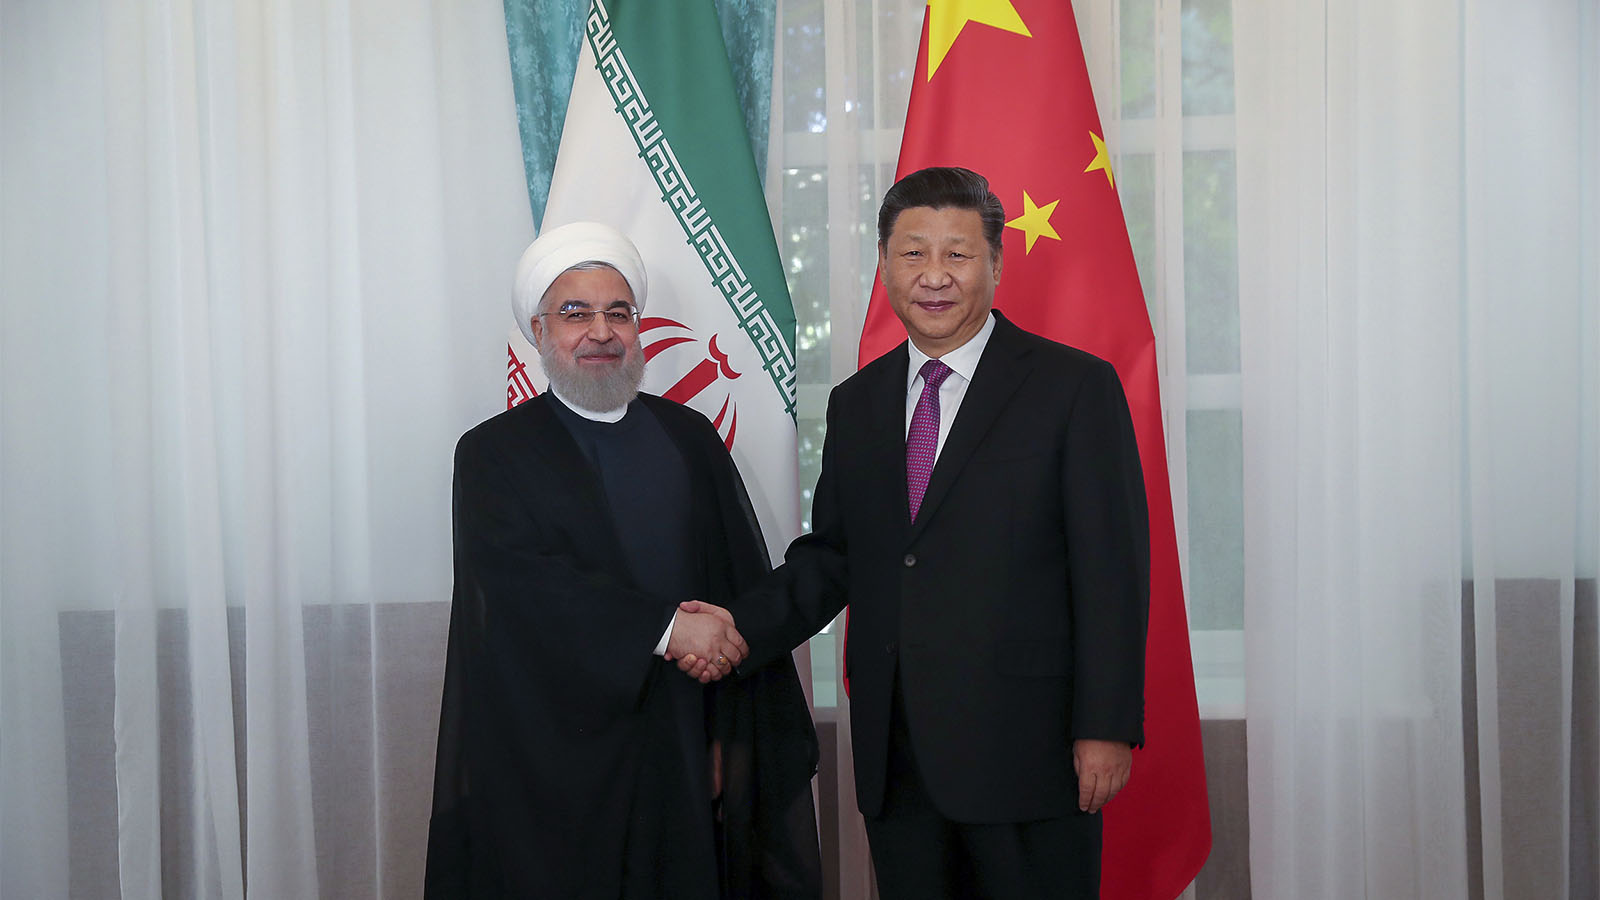 נשיא סין, שי ג'ינפינג לוחץ את ידיו של נשיא איראן חסן רוחאני. ה-14 ביוני 2019 (Iranian Presidency Office via AP)